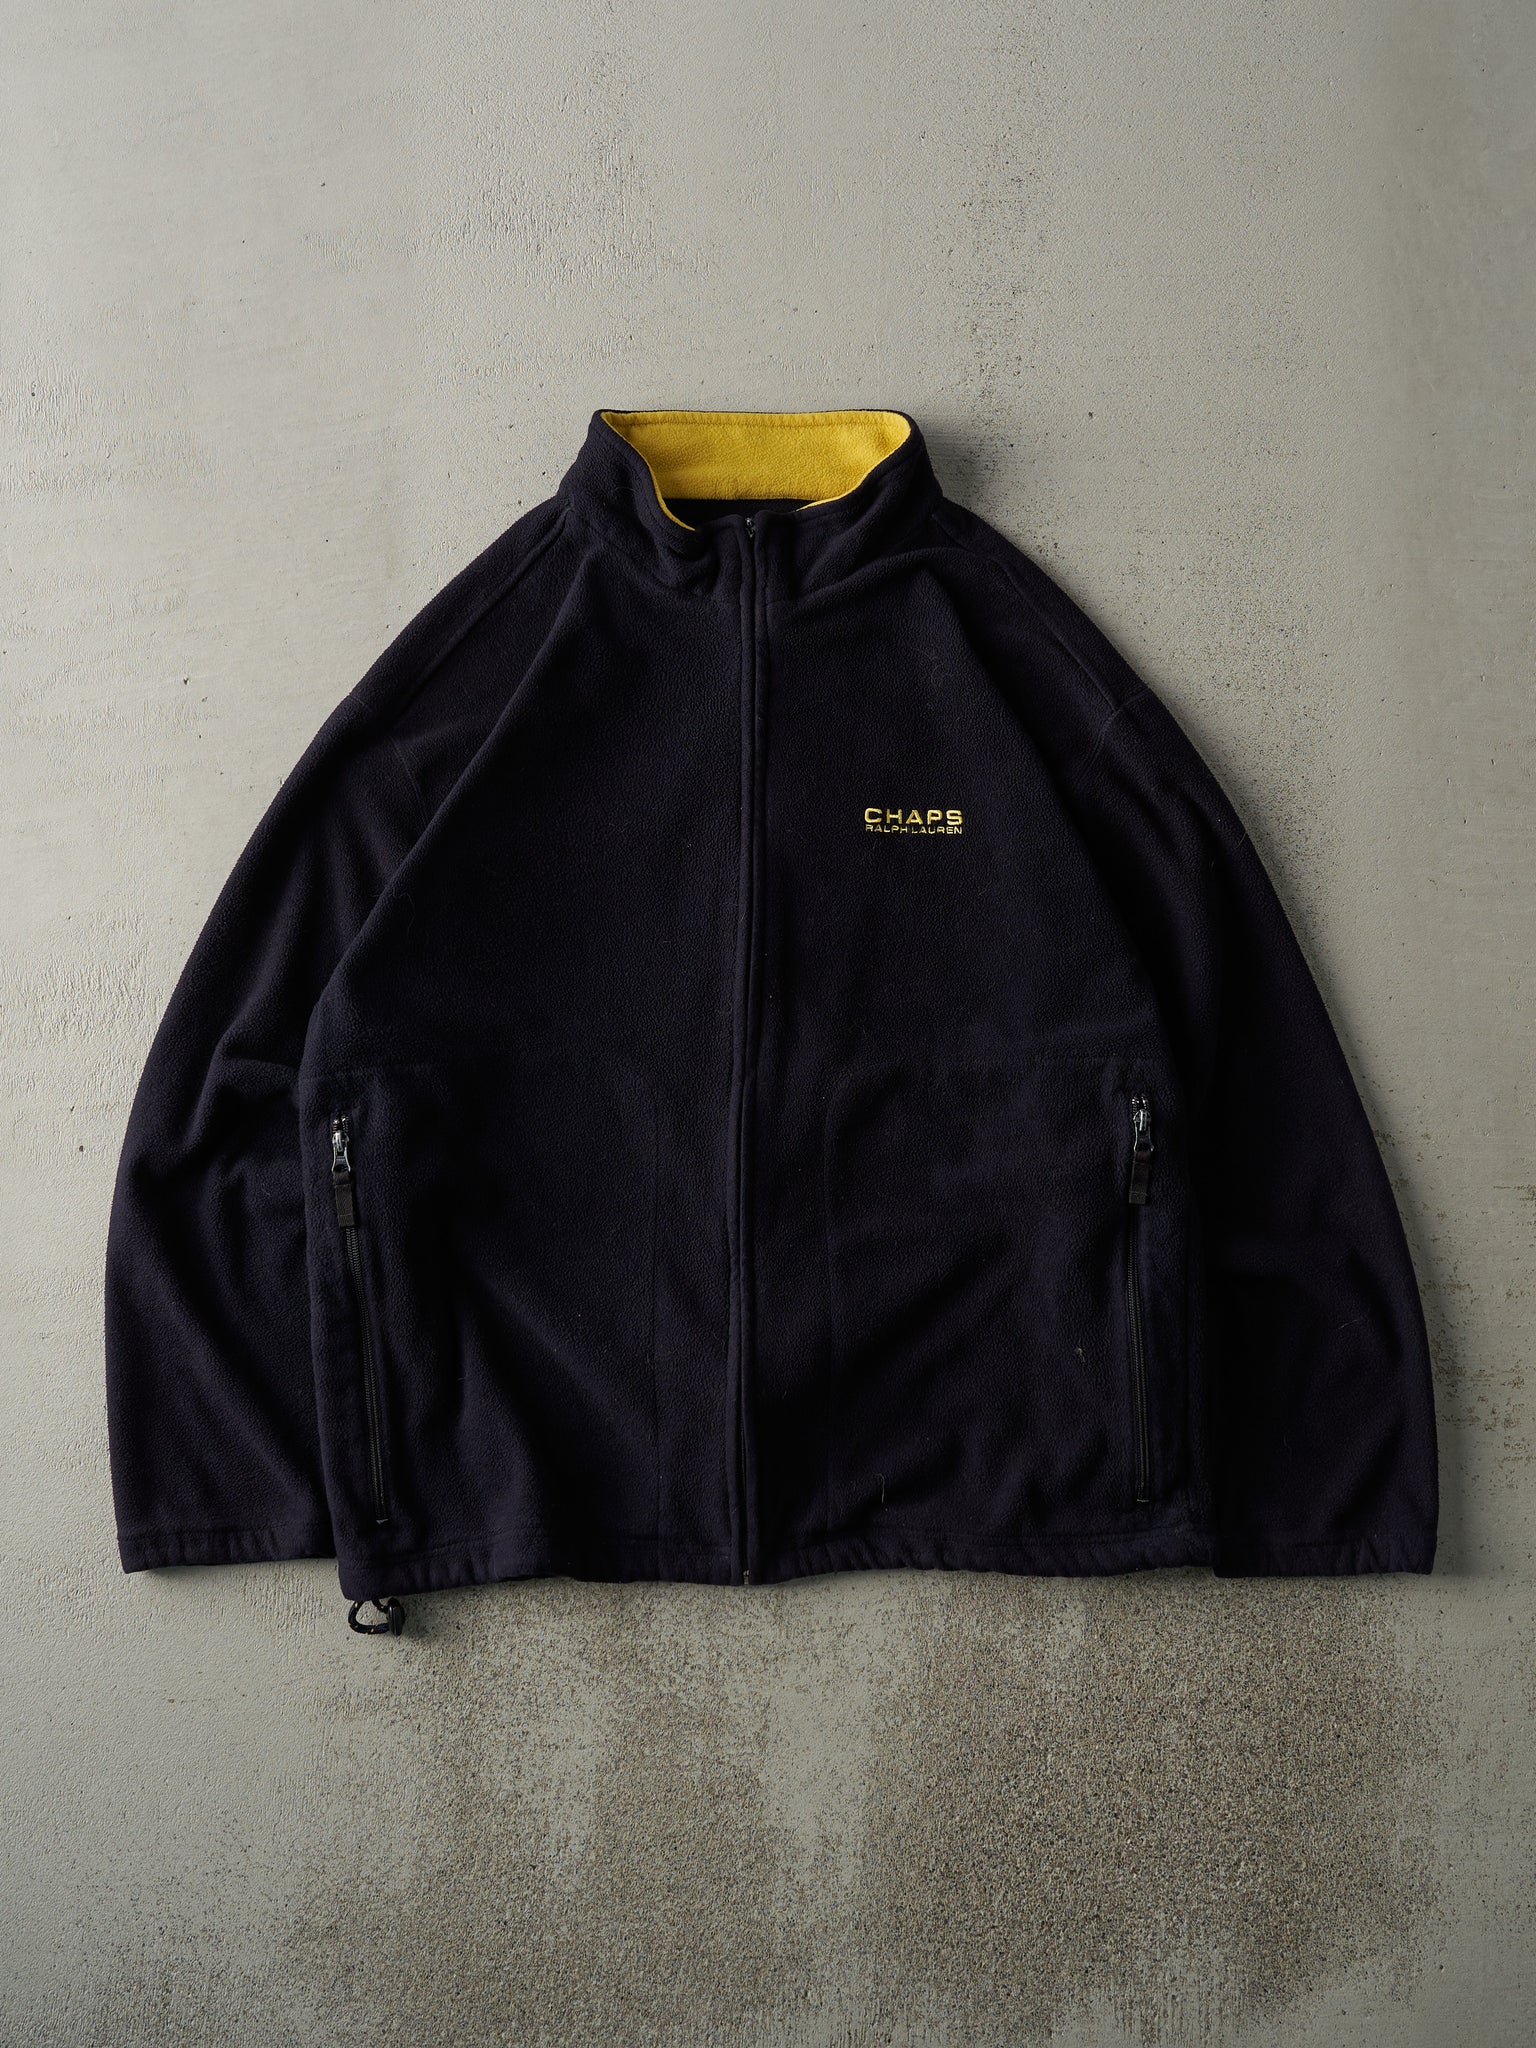 Vintage 90s Black & Yellow Chaps Ralph Lauren Zip Up Fleece Jacket (M)